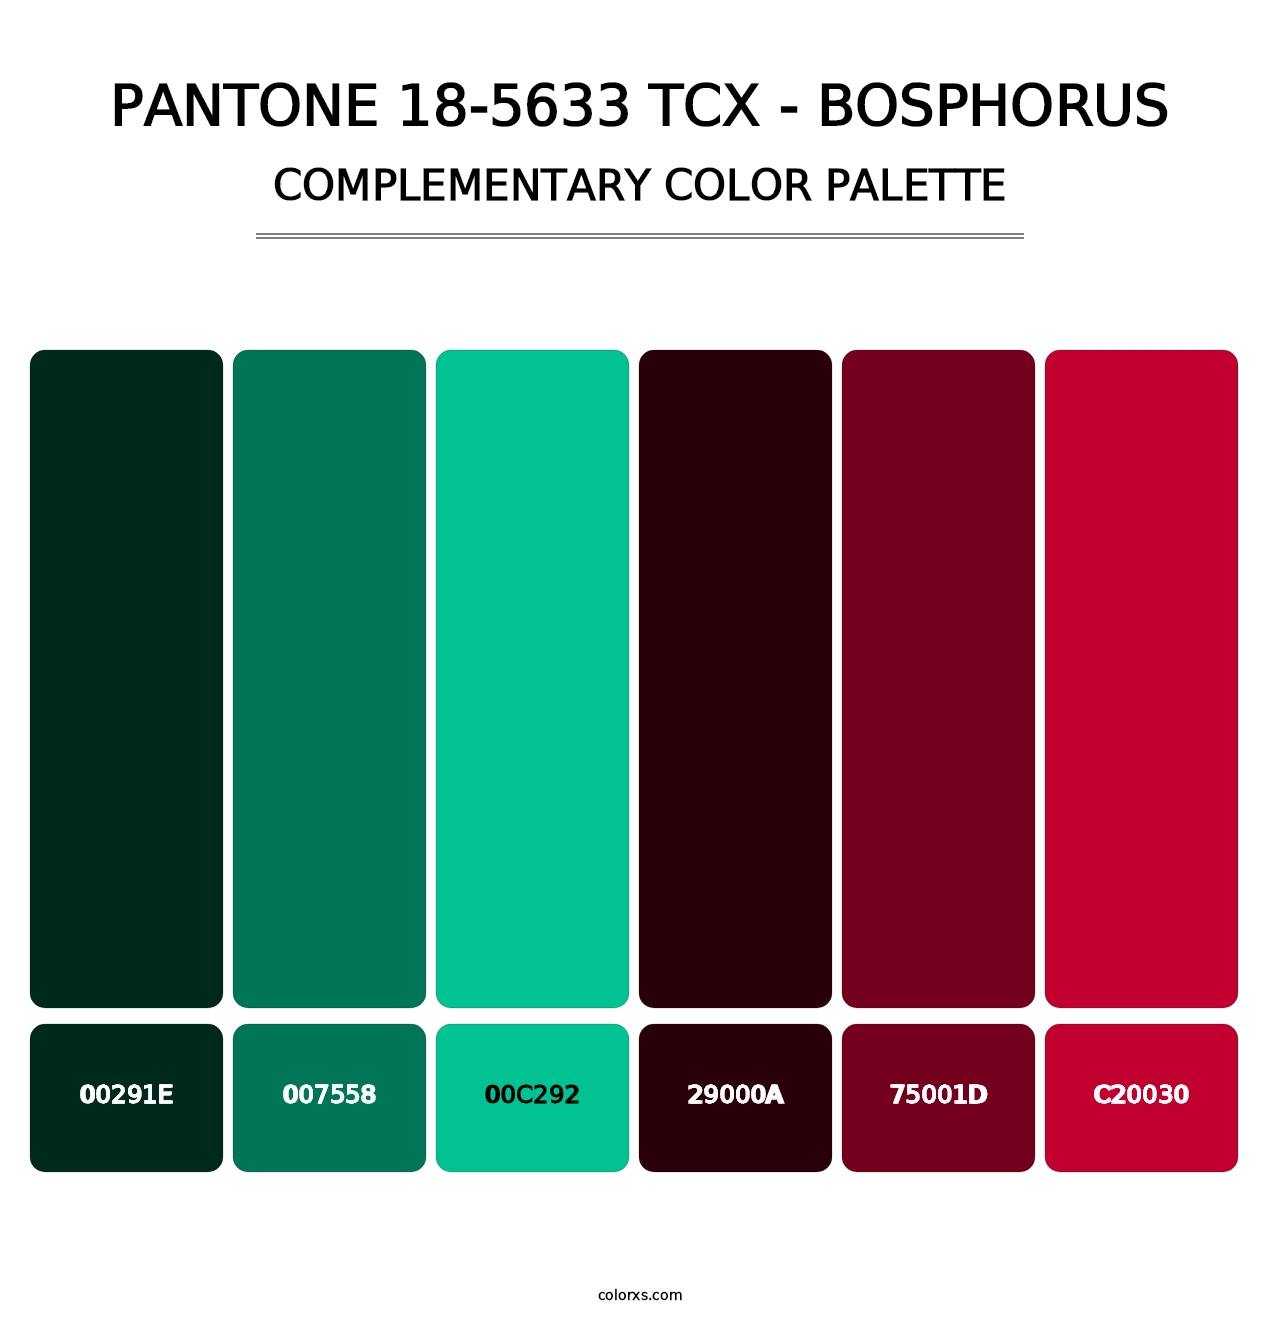 PANTONE 18-5633 TCX - Bosphorus - Complementary Color Palette